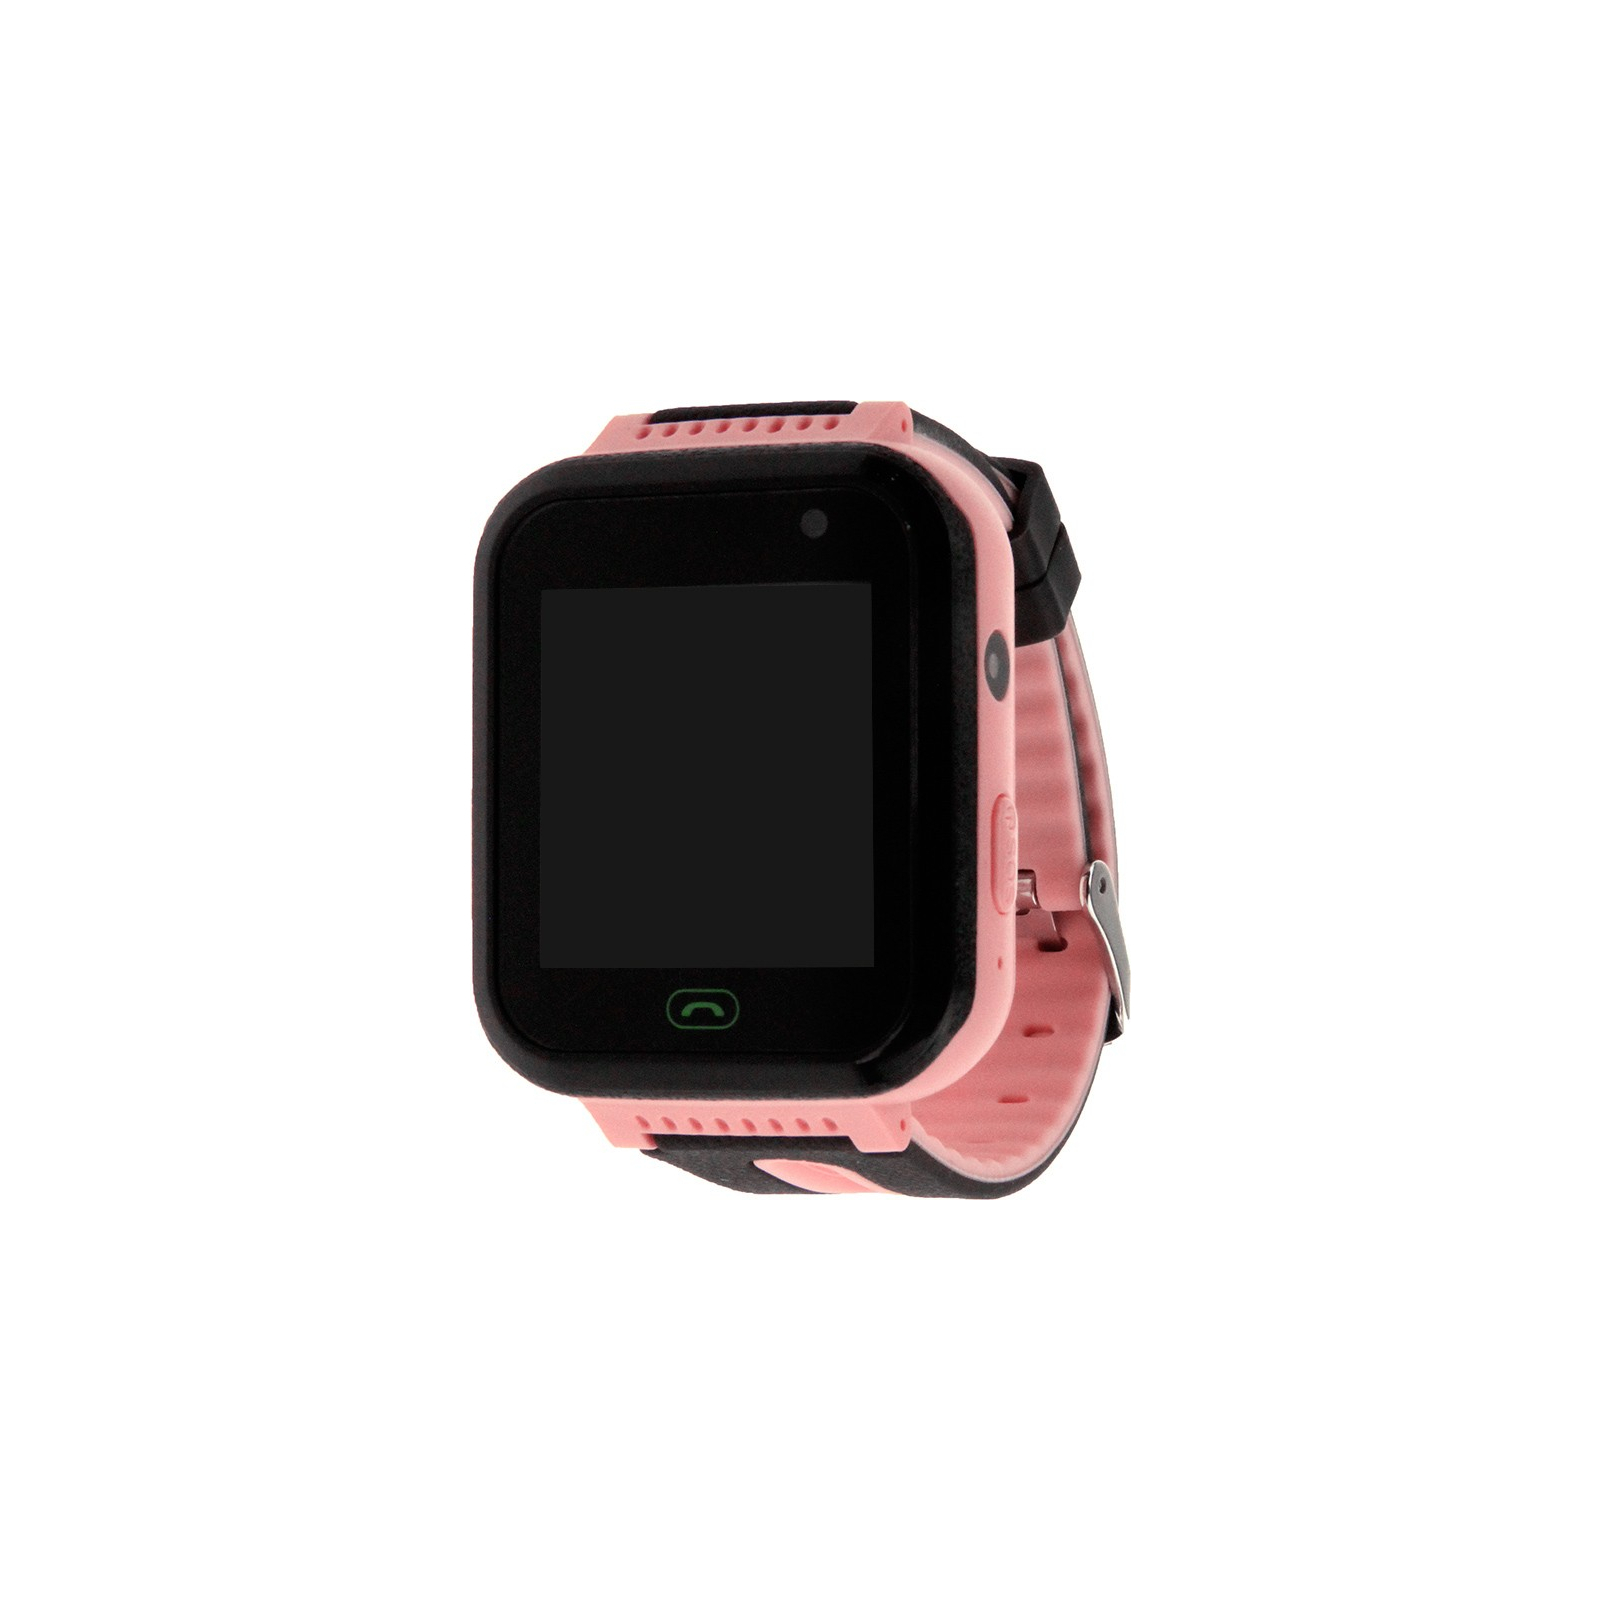 Смарт-часы UWatch S7 Kid smart watch Green (F_87349)